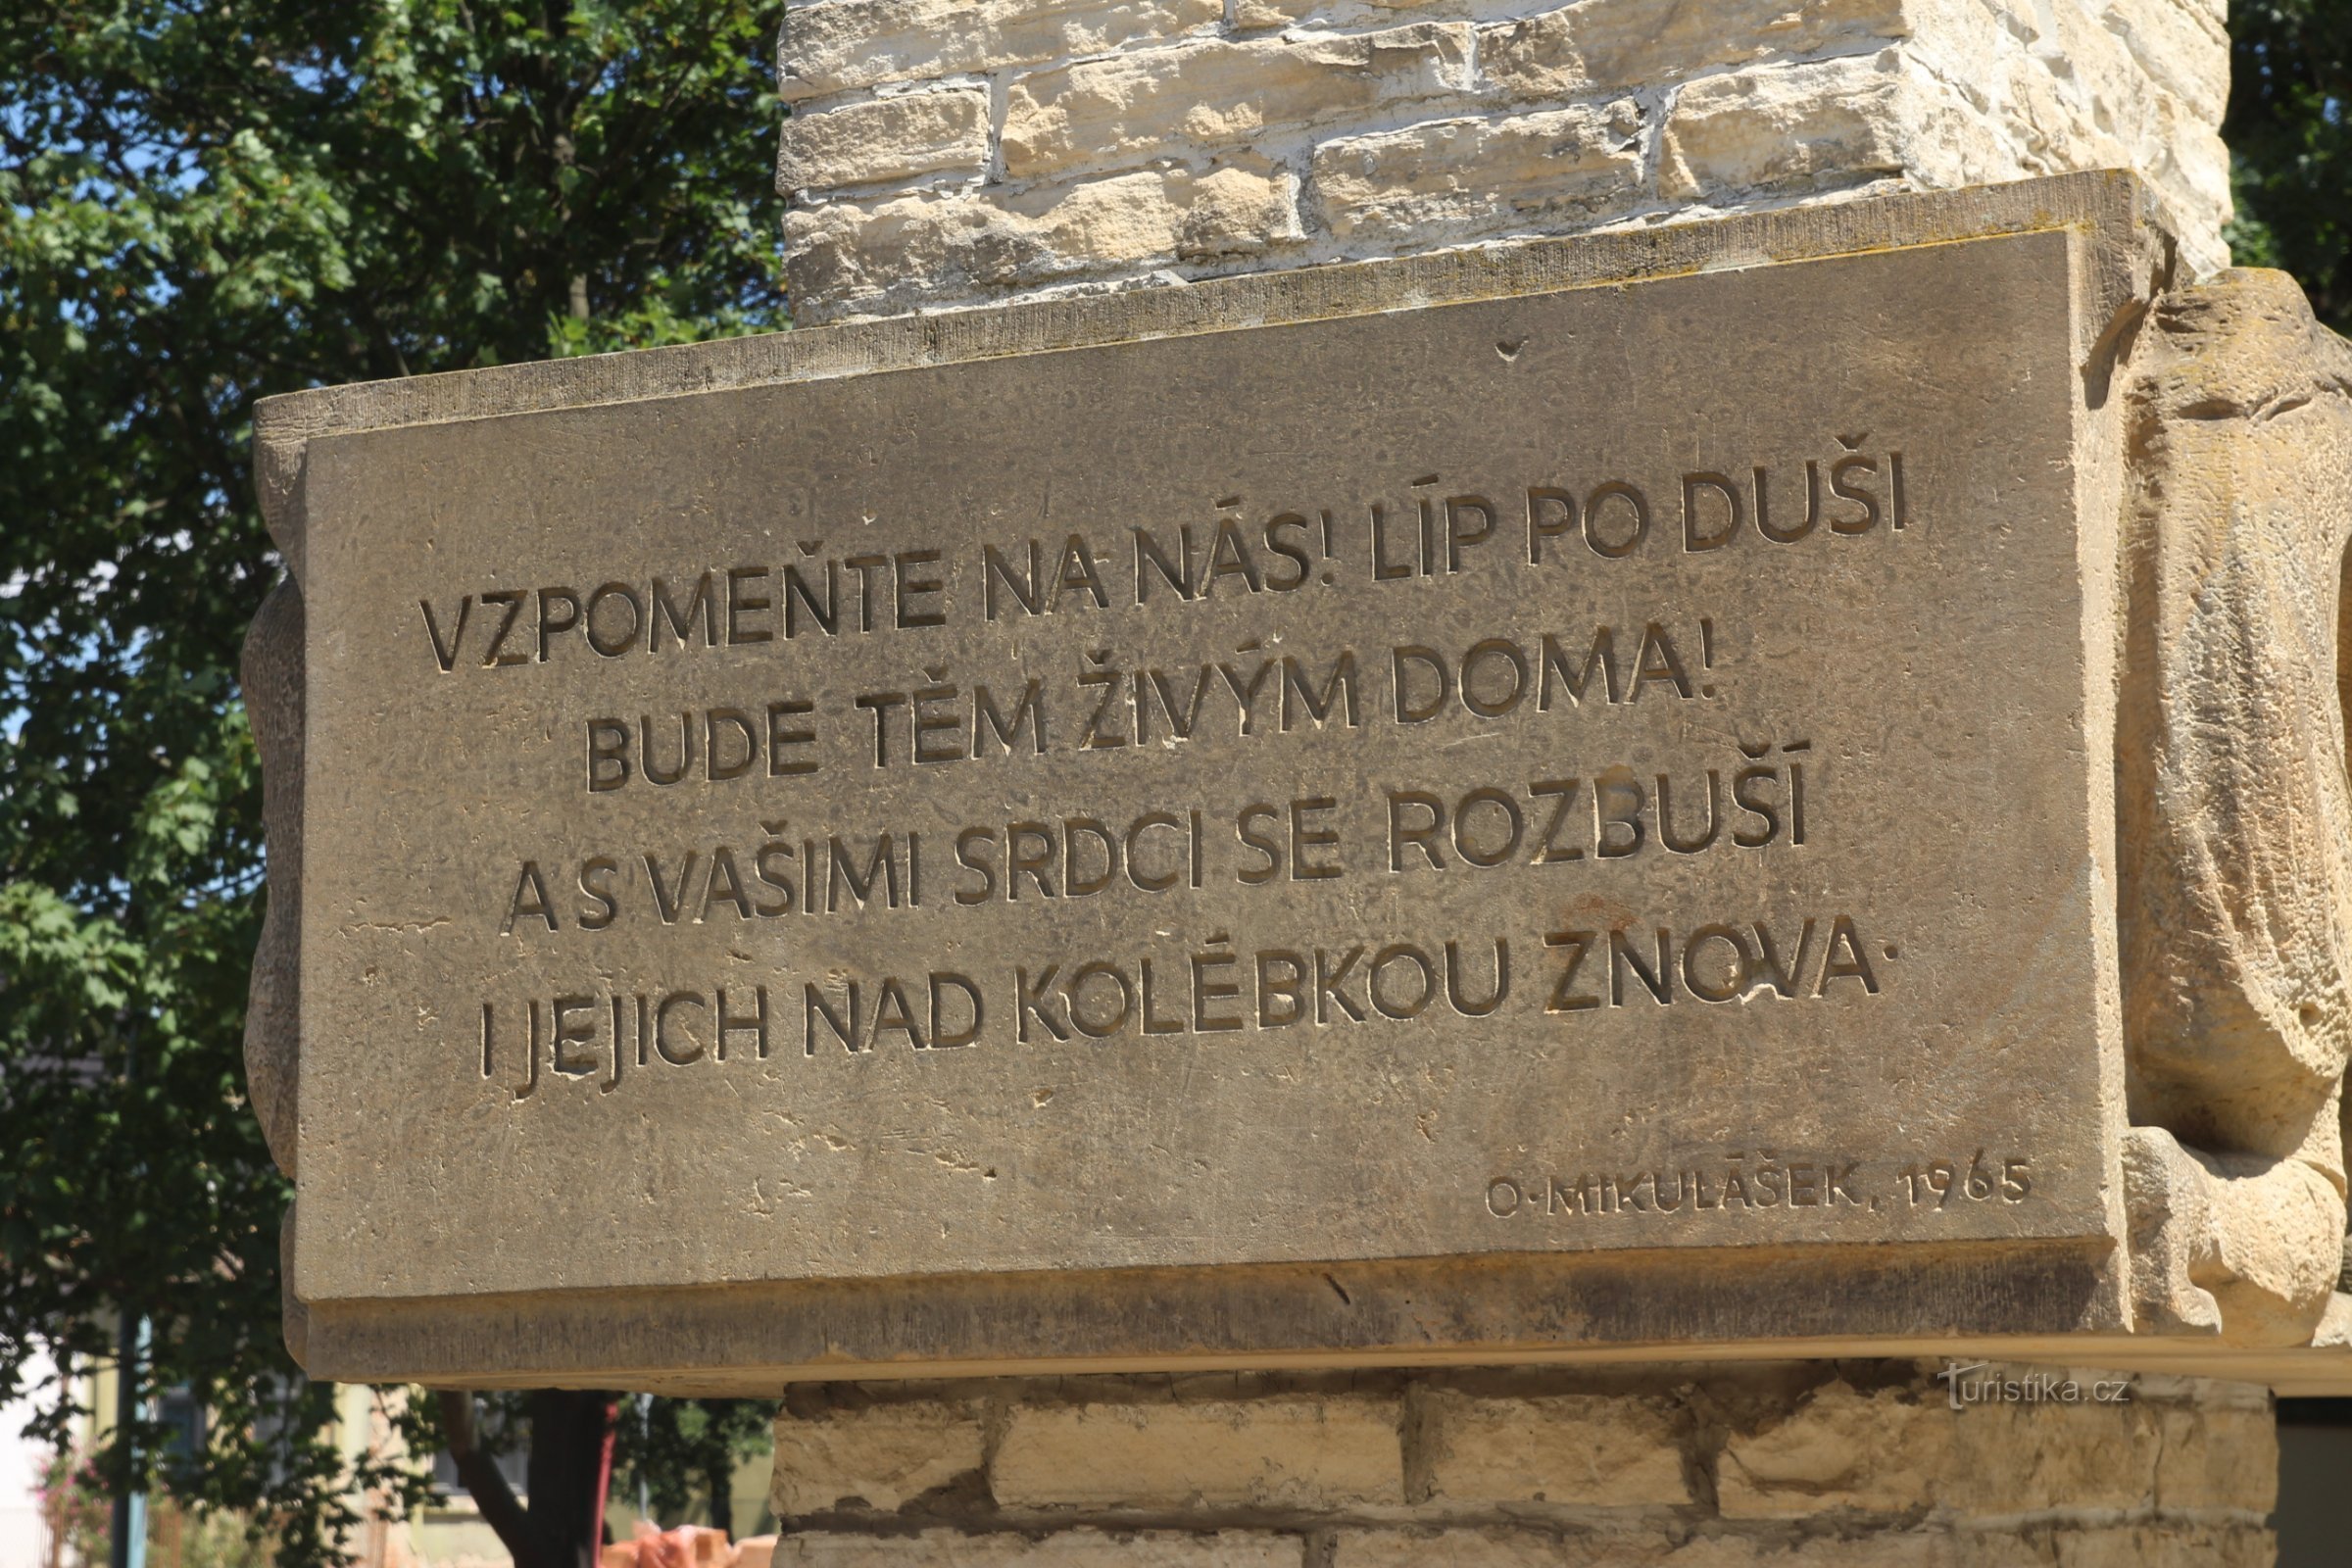 Texto en el lateral del monumento.